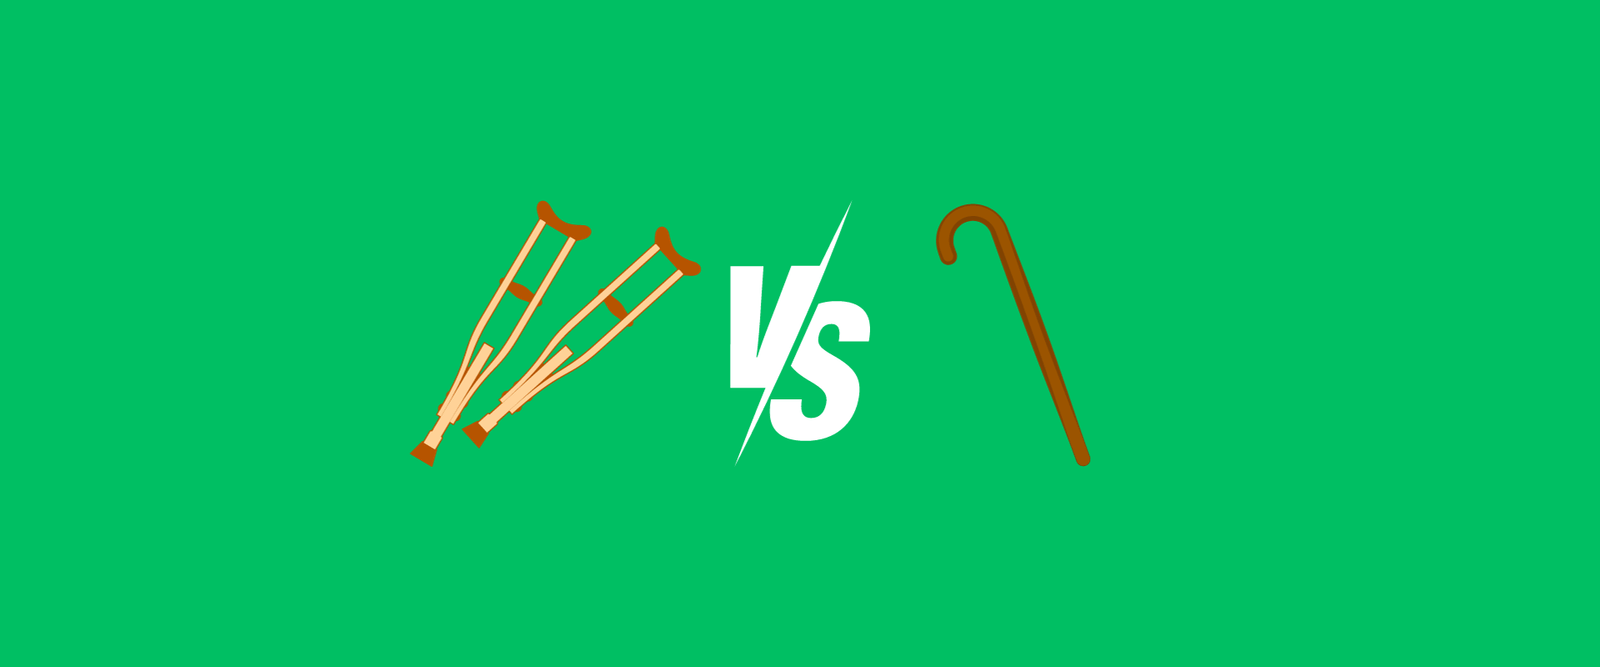 Crutches vs Walking Sticks